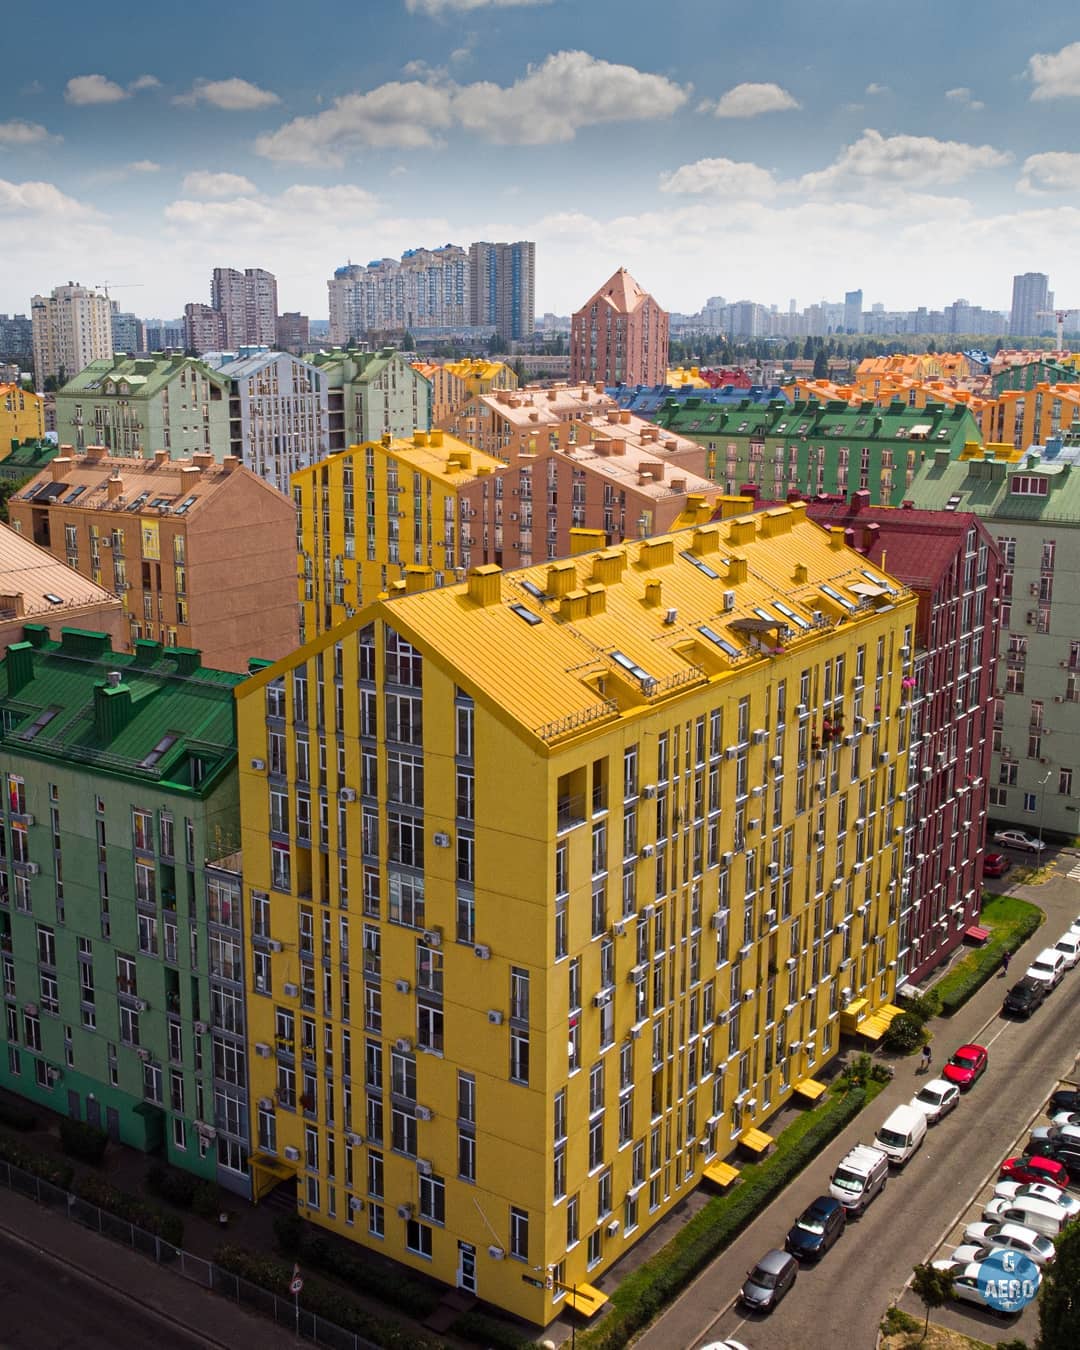 原來這才是基輔！烏克蘭首都「樂高之城」絕美照曝光　整齊方格就像積木